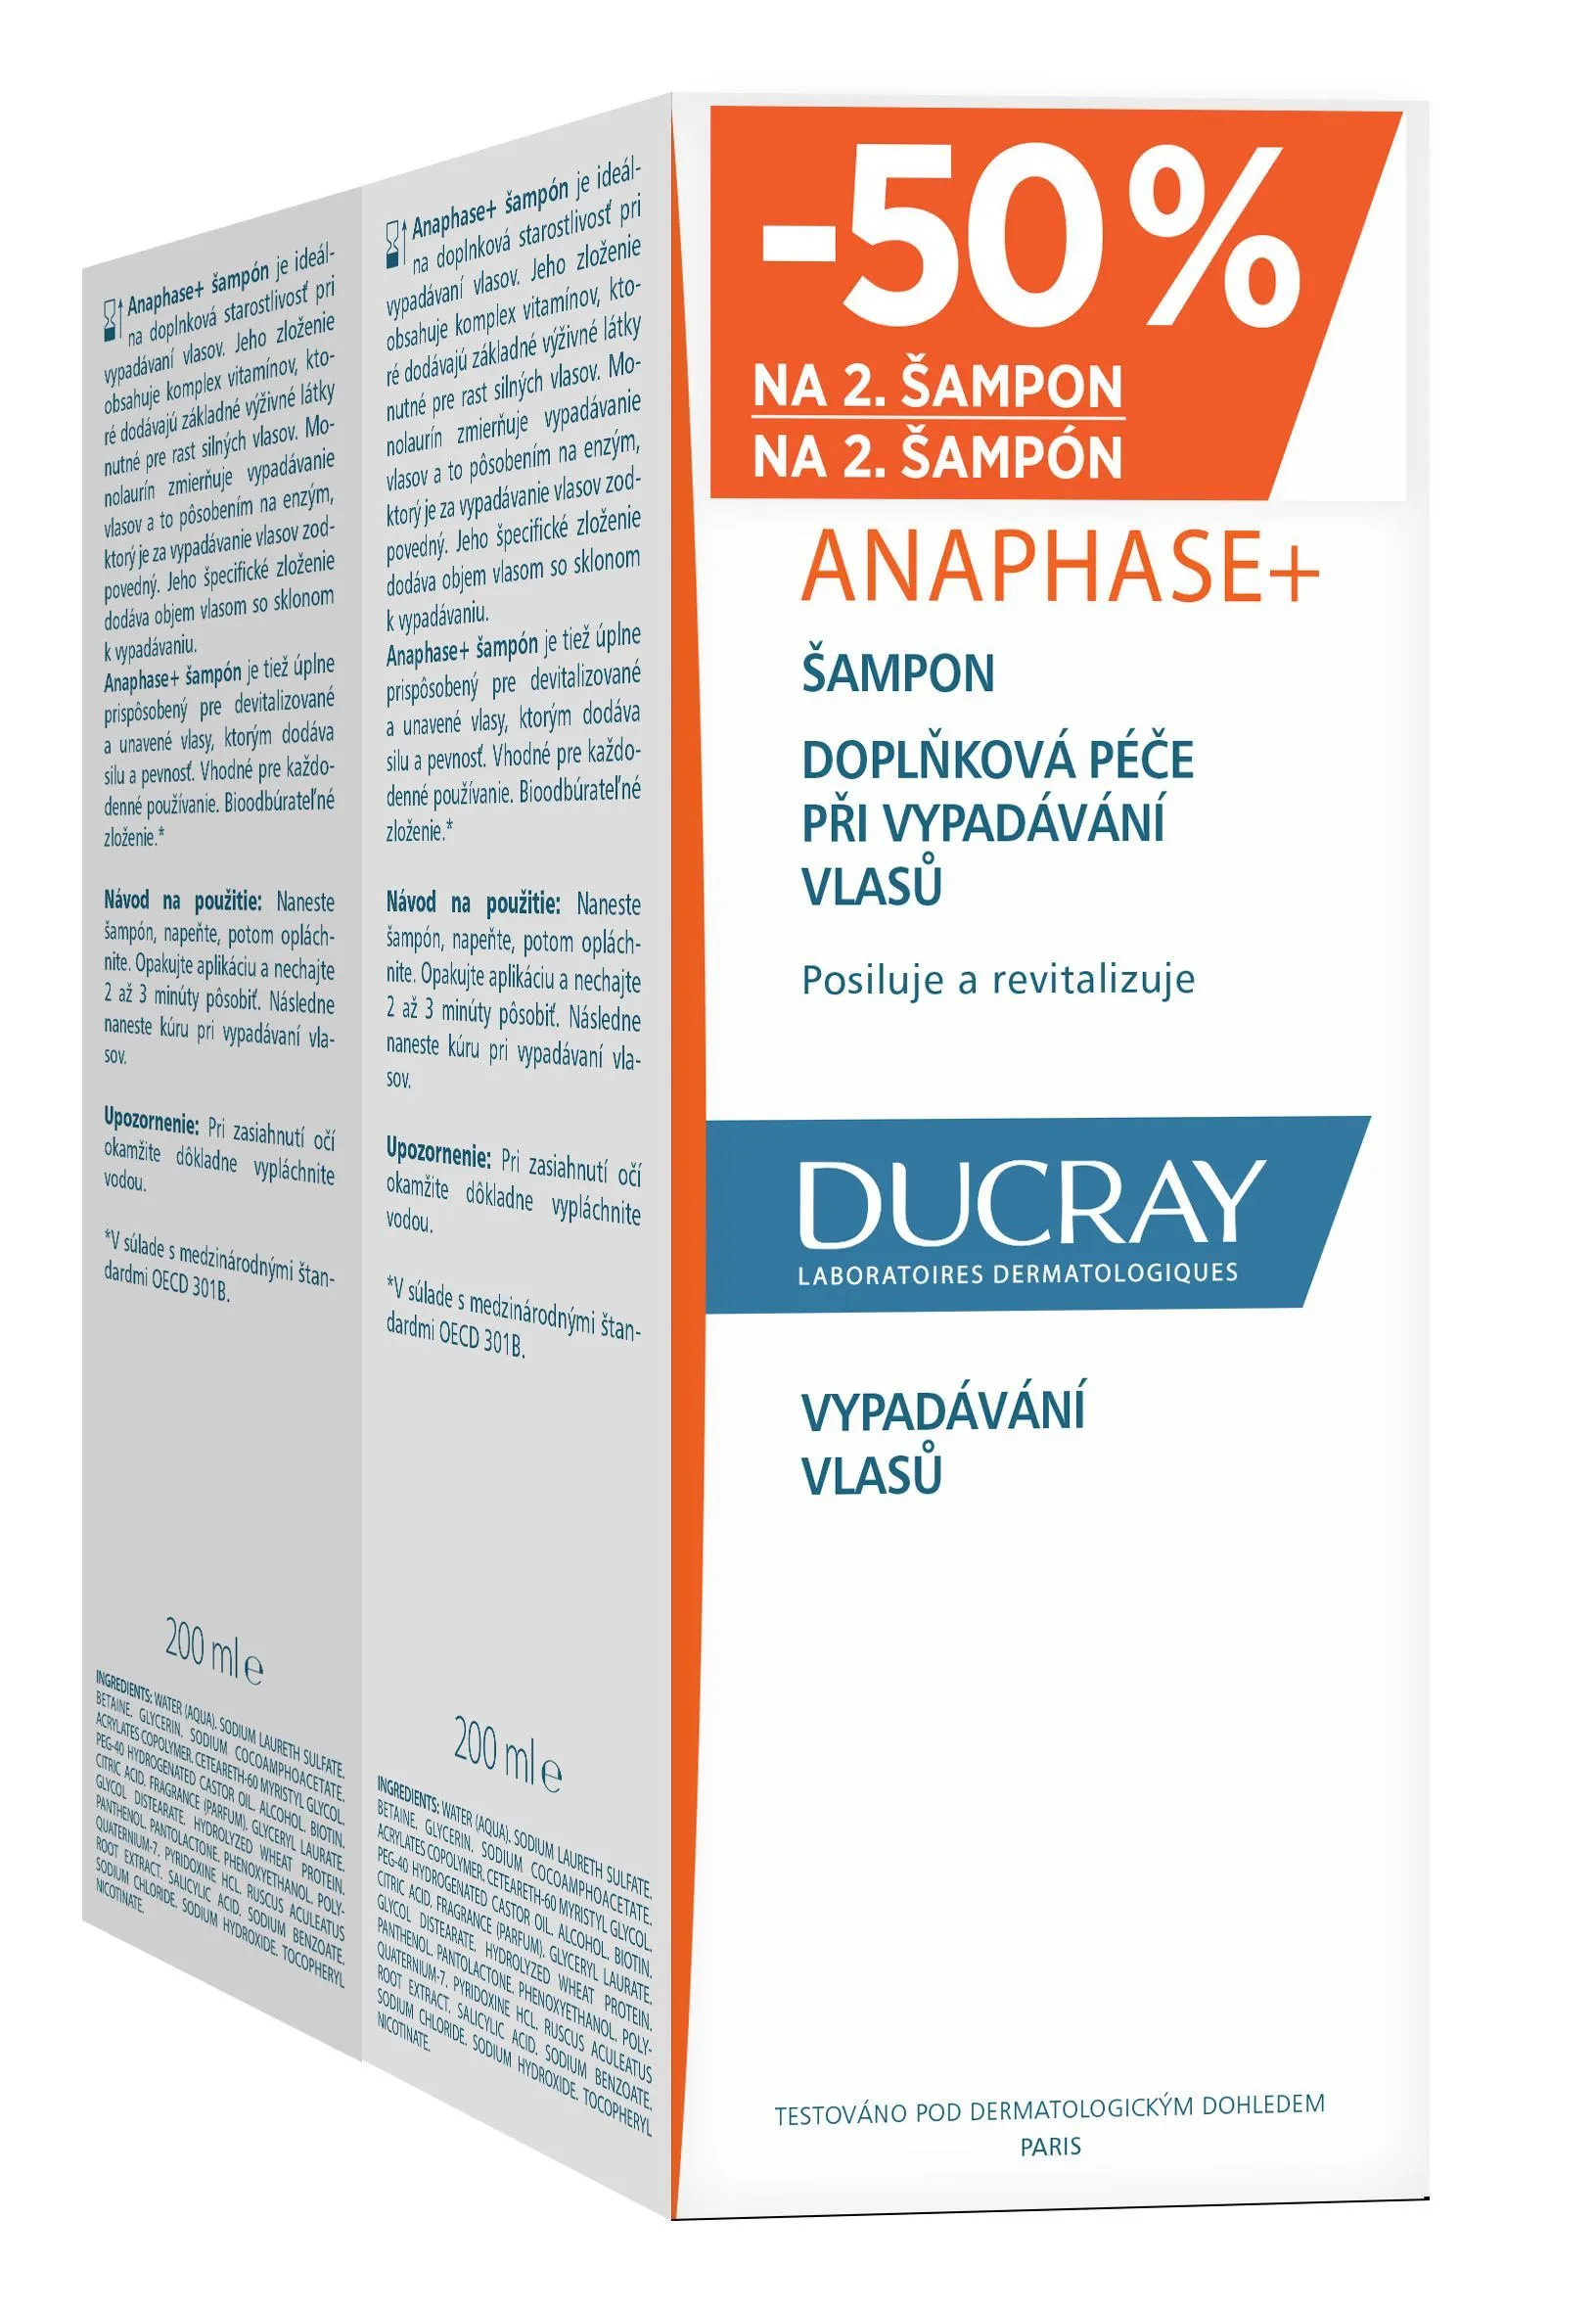 Ducray Anaphase+ šampon 2x200 ml